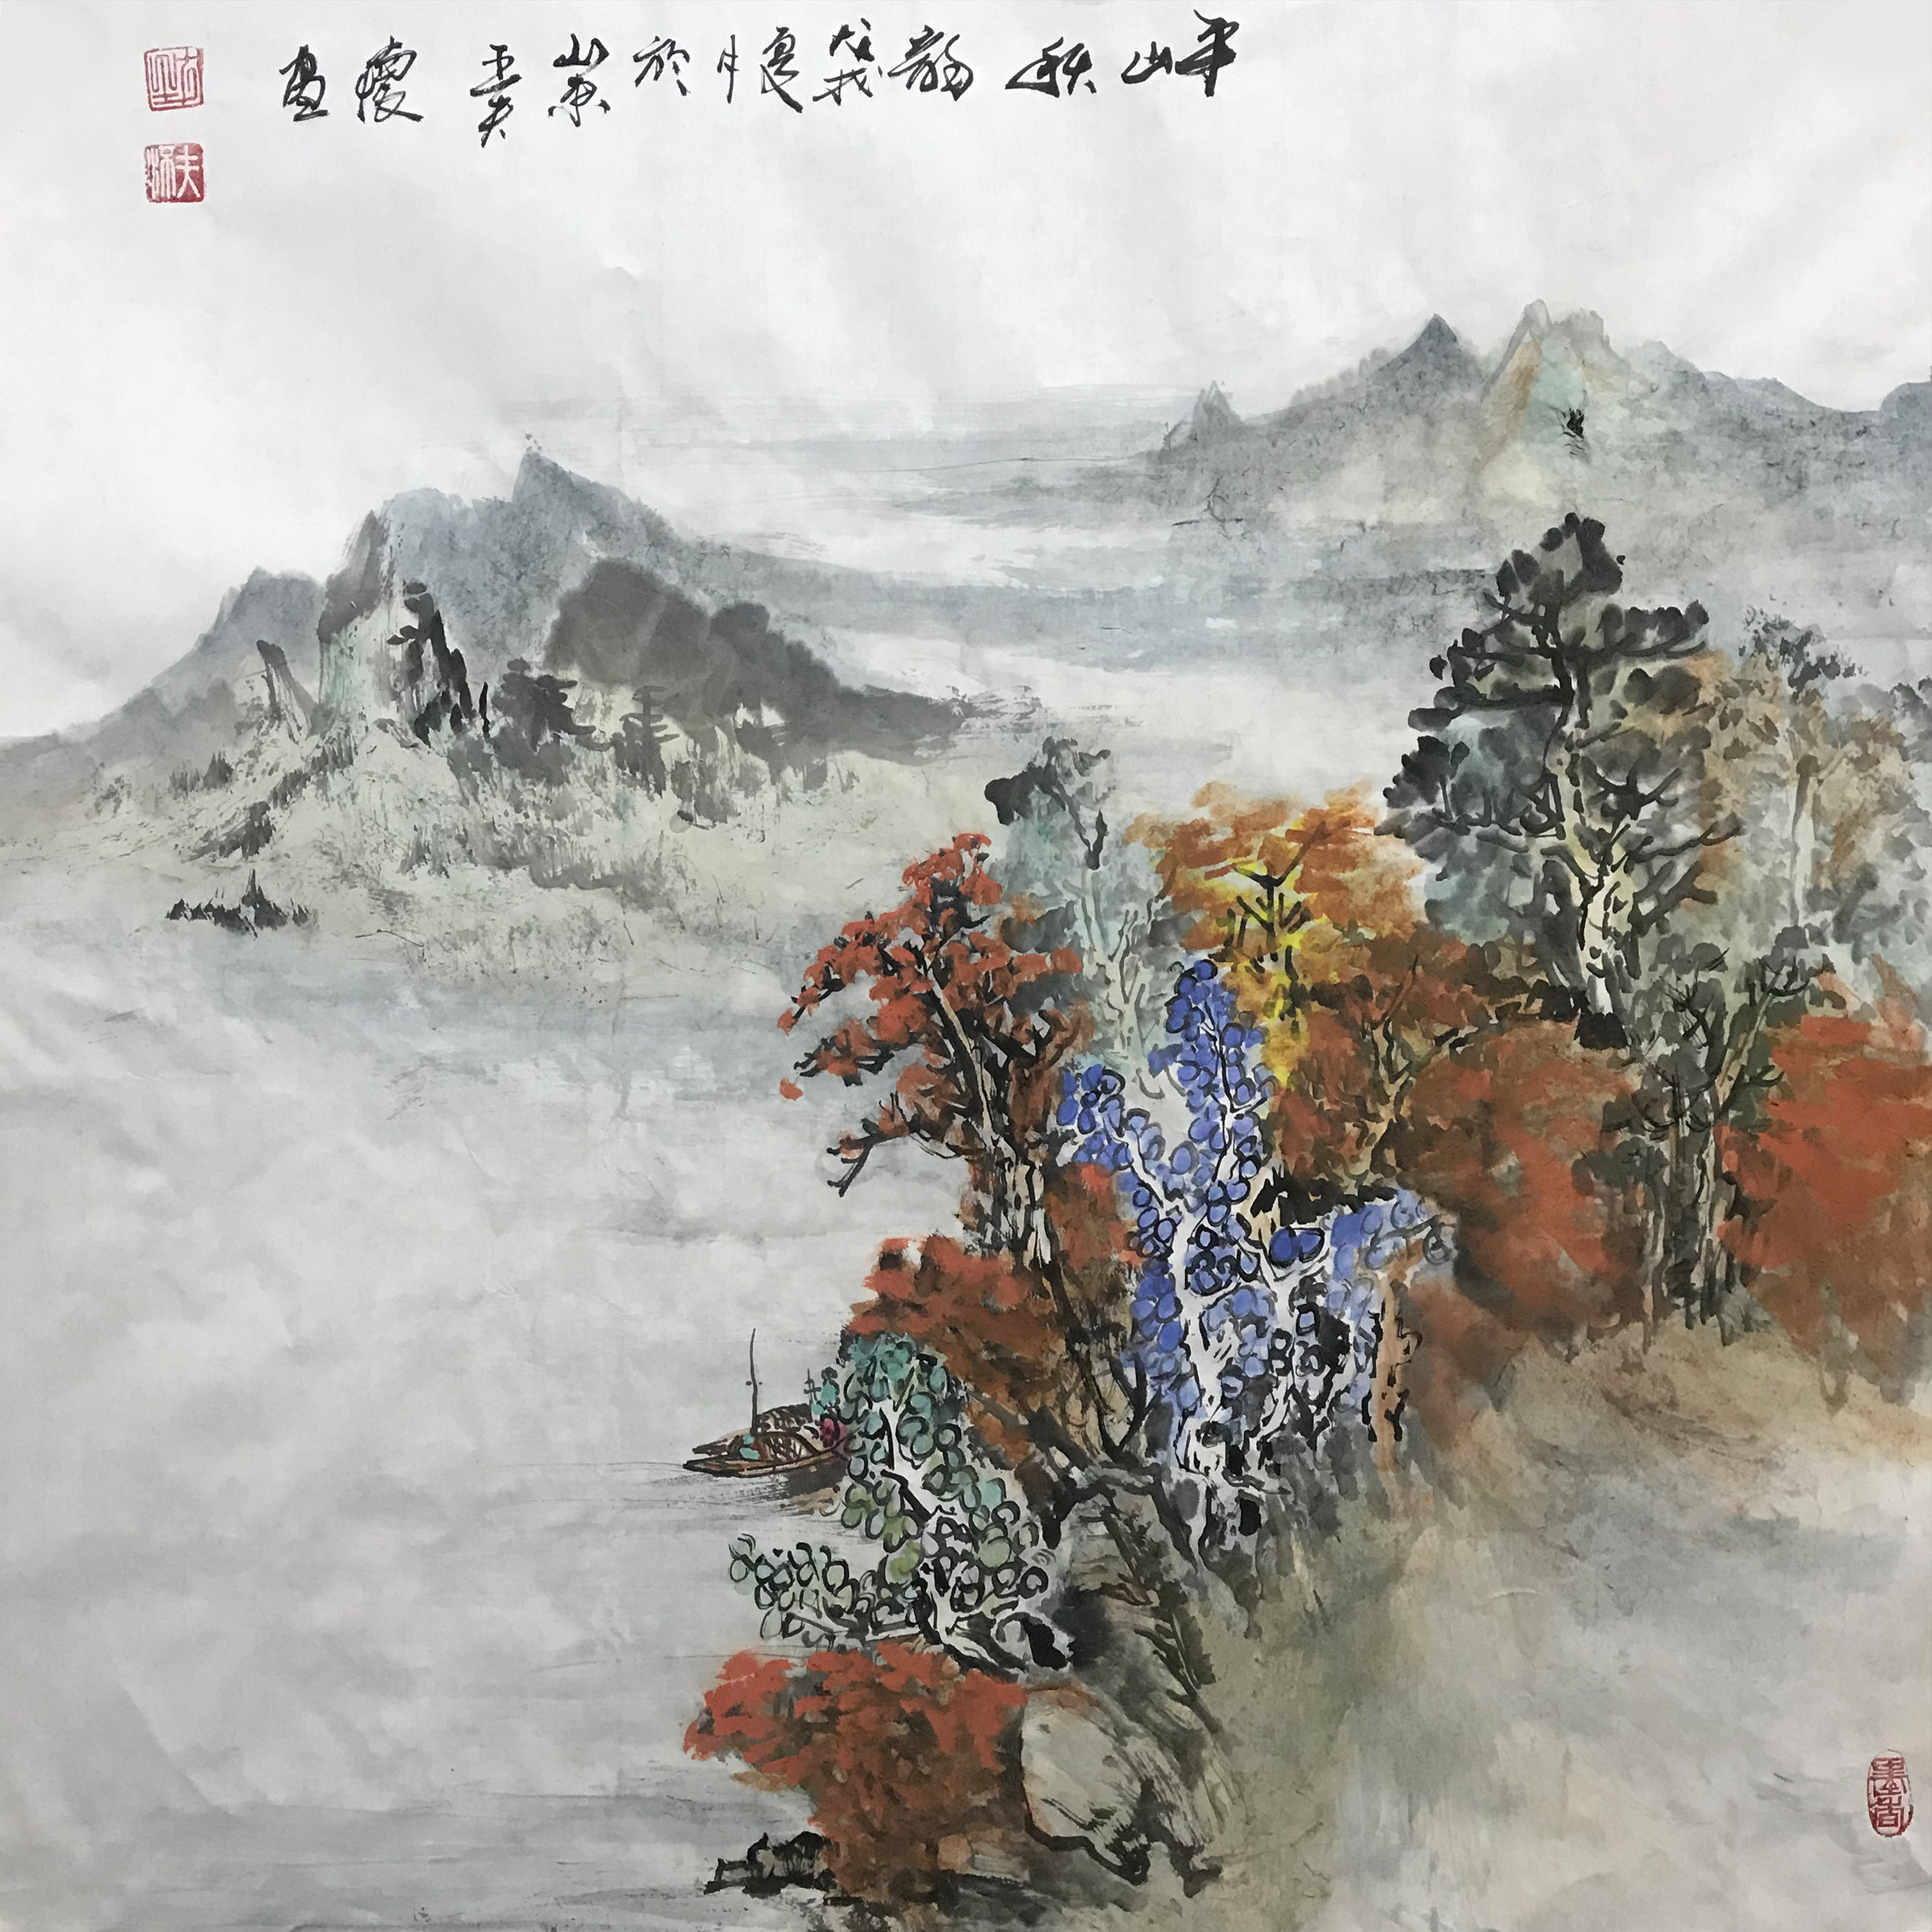 魅力中国艺术推选人物王夫怀华夏书画名家第103期